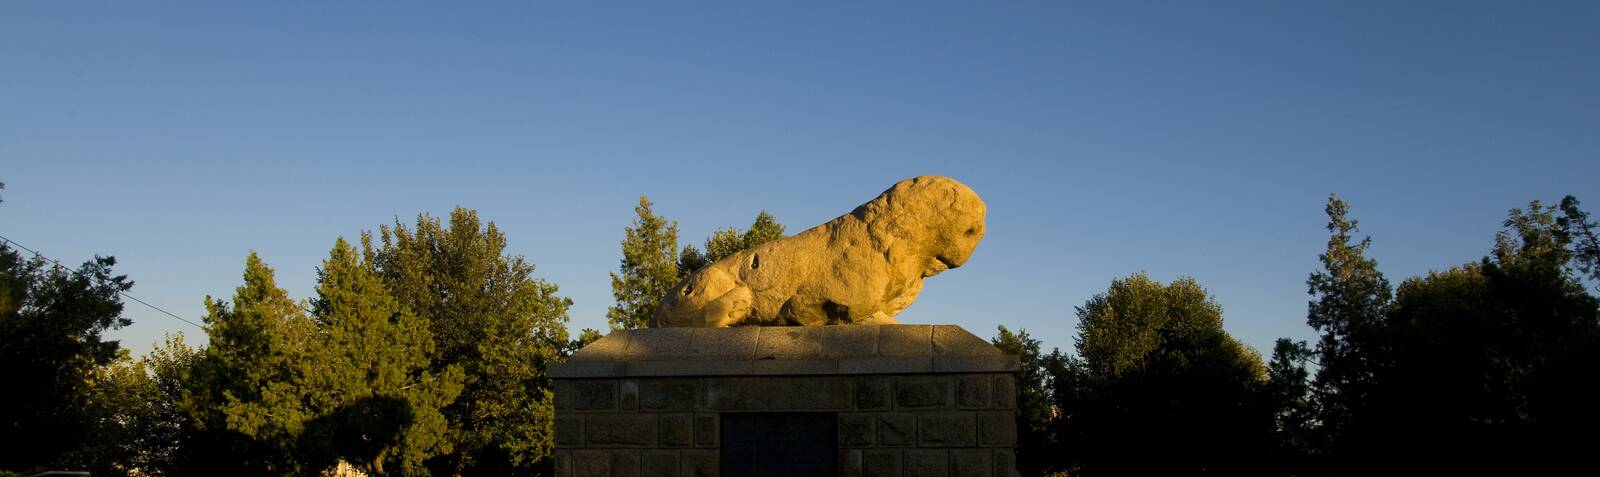 Estatua de León de Piedra (Shir-e Sangi)